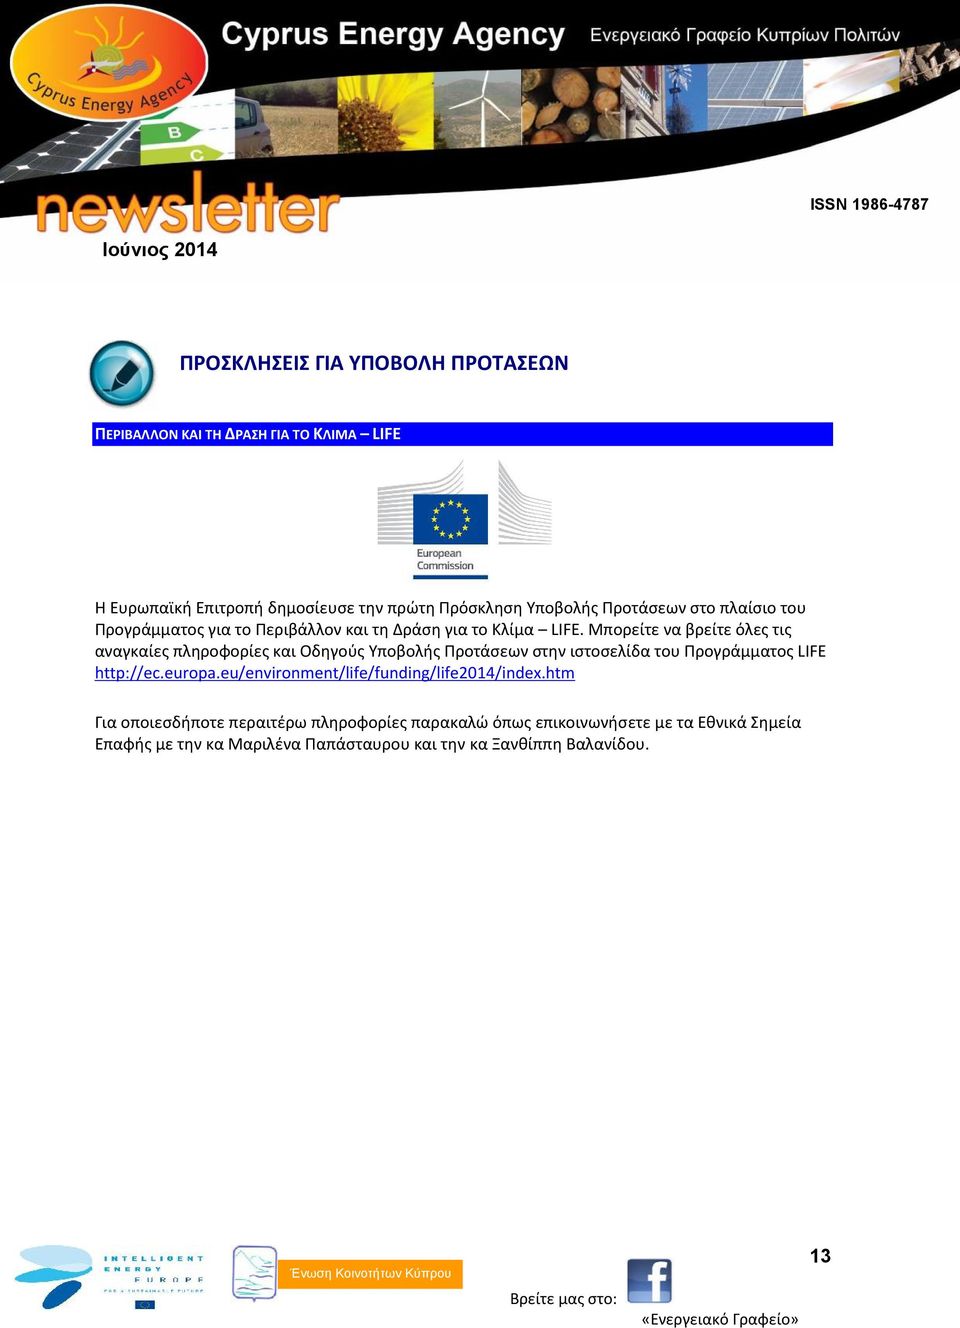 Μπορείτε να βρείτε όλες τις αναγκαίες πληροφορίες και Οδηγούς Υποβολής Προτάσεων στην ιστοσελίδα του Προγράμματος LIFE http://ec.europa.